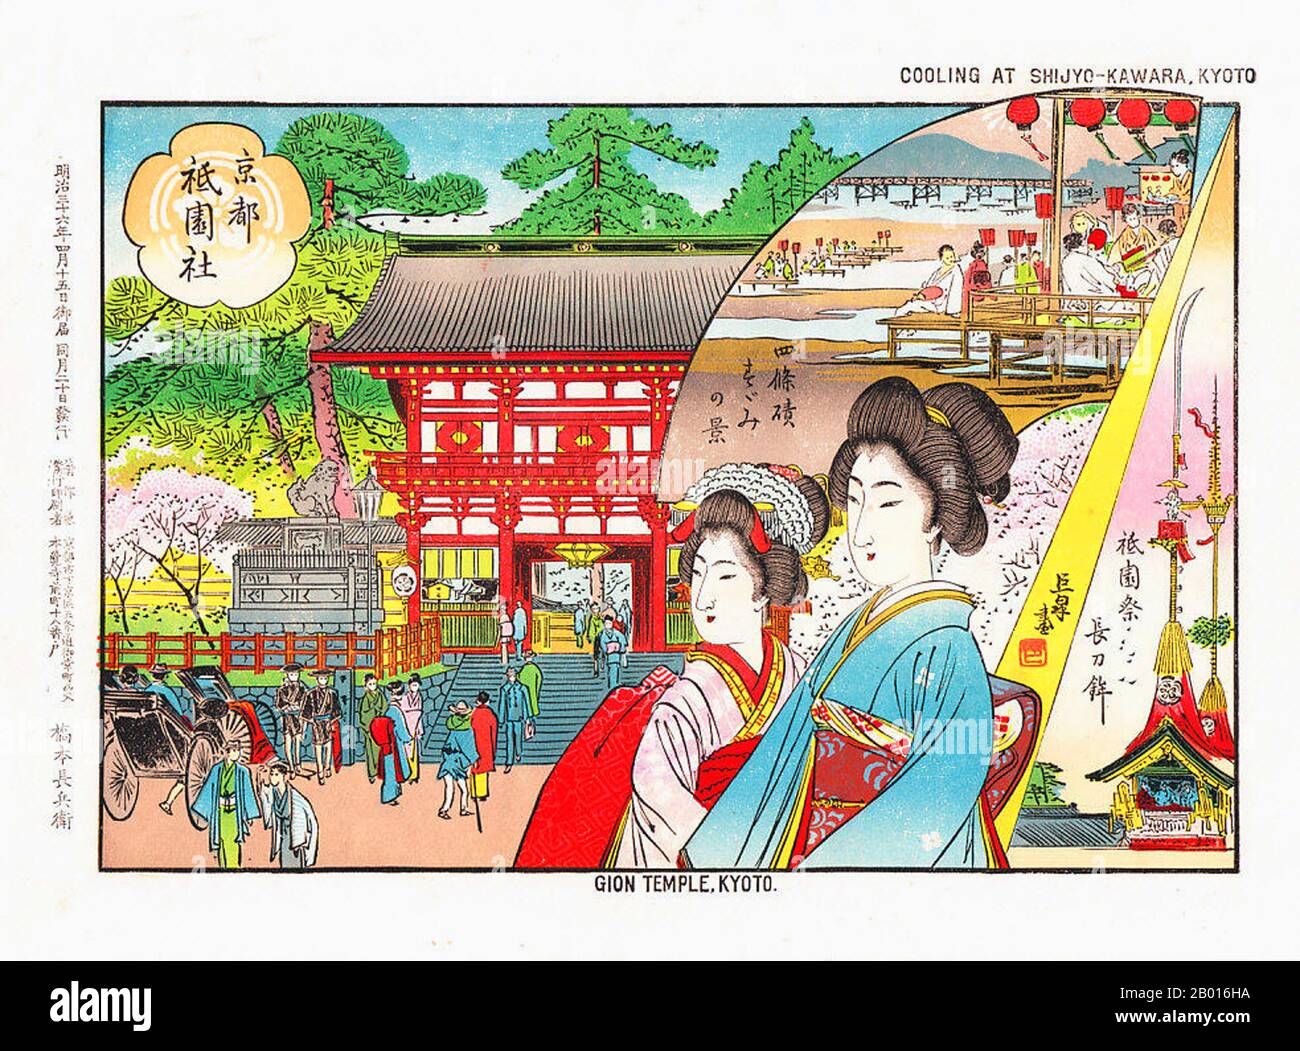 Japón: 'Dos Geiko en el Templo Gion de Kioto; Inset 'Enfriamiento en Shijyo-Kawara, Kioto''. Estampado de bloques de madera ukiyo-e, 1903. El Templo de Gion (Santuario de Gion) es ahora conocido como Yasaka Jinja. Gion es un distrito de Kyoto, Japón, originalmente desarrollado en la Edad Media, frente al santuario Yasaka. El distrito fue construido para satisfacer las necesidades de los viajeros y visitantes al santuario. Finalmente evolucionó para convertirse en uno de los distritos de geishas más exclusivos y conocidos de todo Japón. La geisha en el distrito de Gion no se refieren a sí misma como geisha; en su lugar, Gion geisha utiliza el término local geiko. Foto de stock